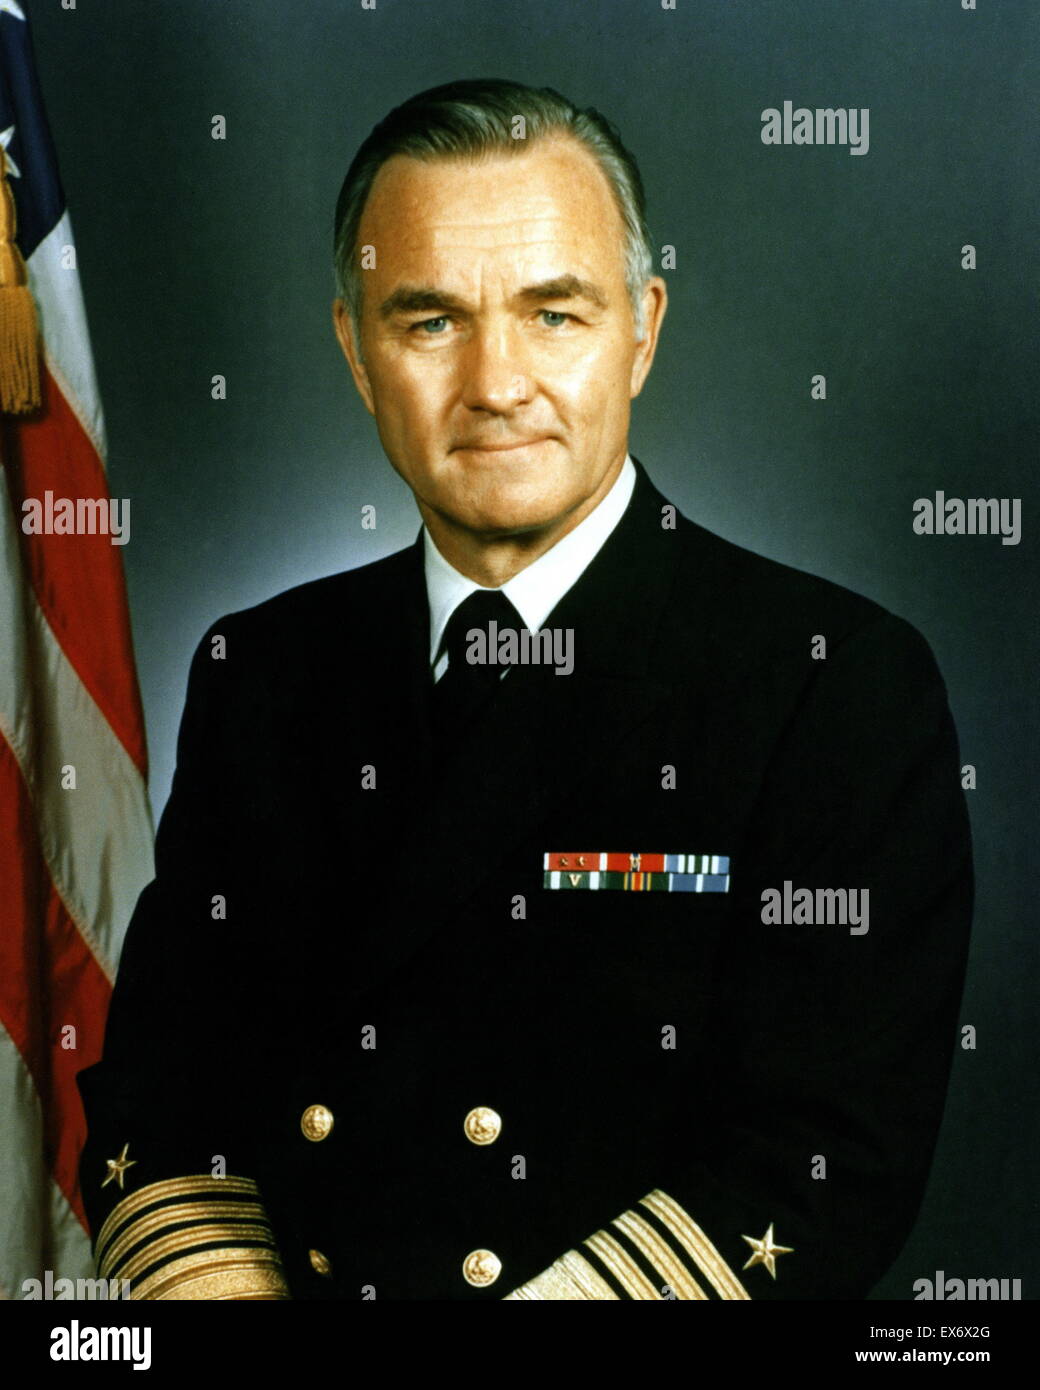 M. Stansfield Turner (né le 1 décembre 1923) est un ancien amiral de la marine des États-Unis et ancien directeur de l'Agence centrale de renseignement 1977-1981 Banque D'Images